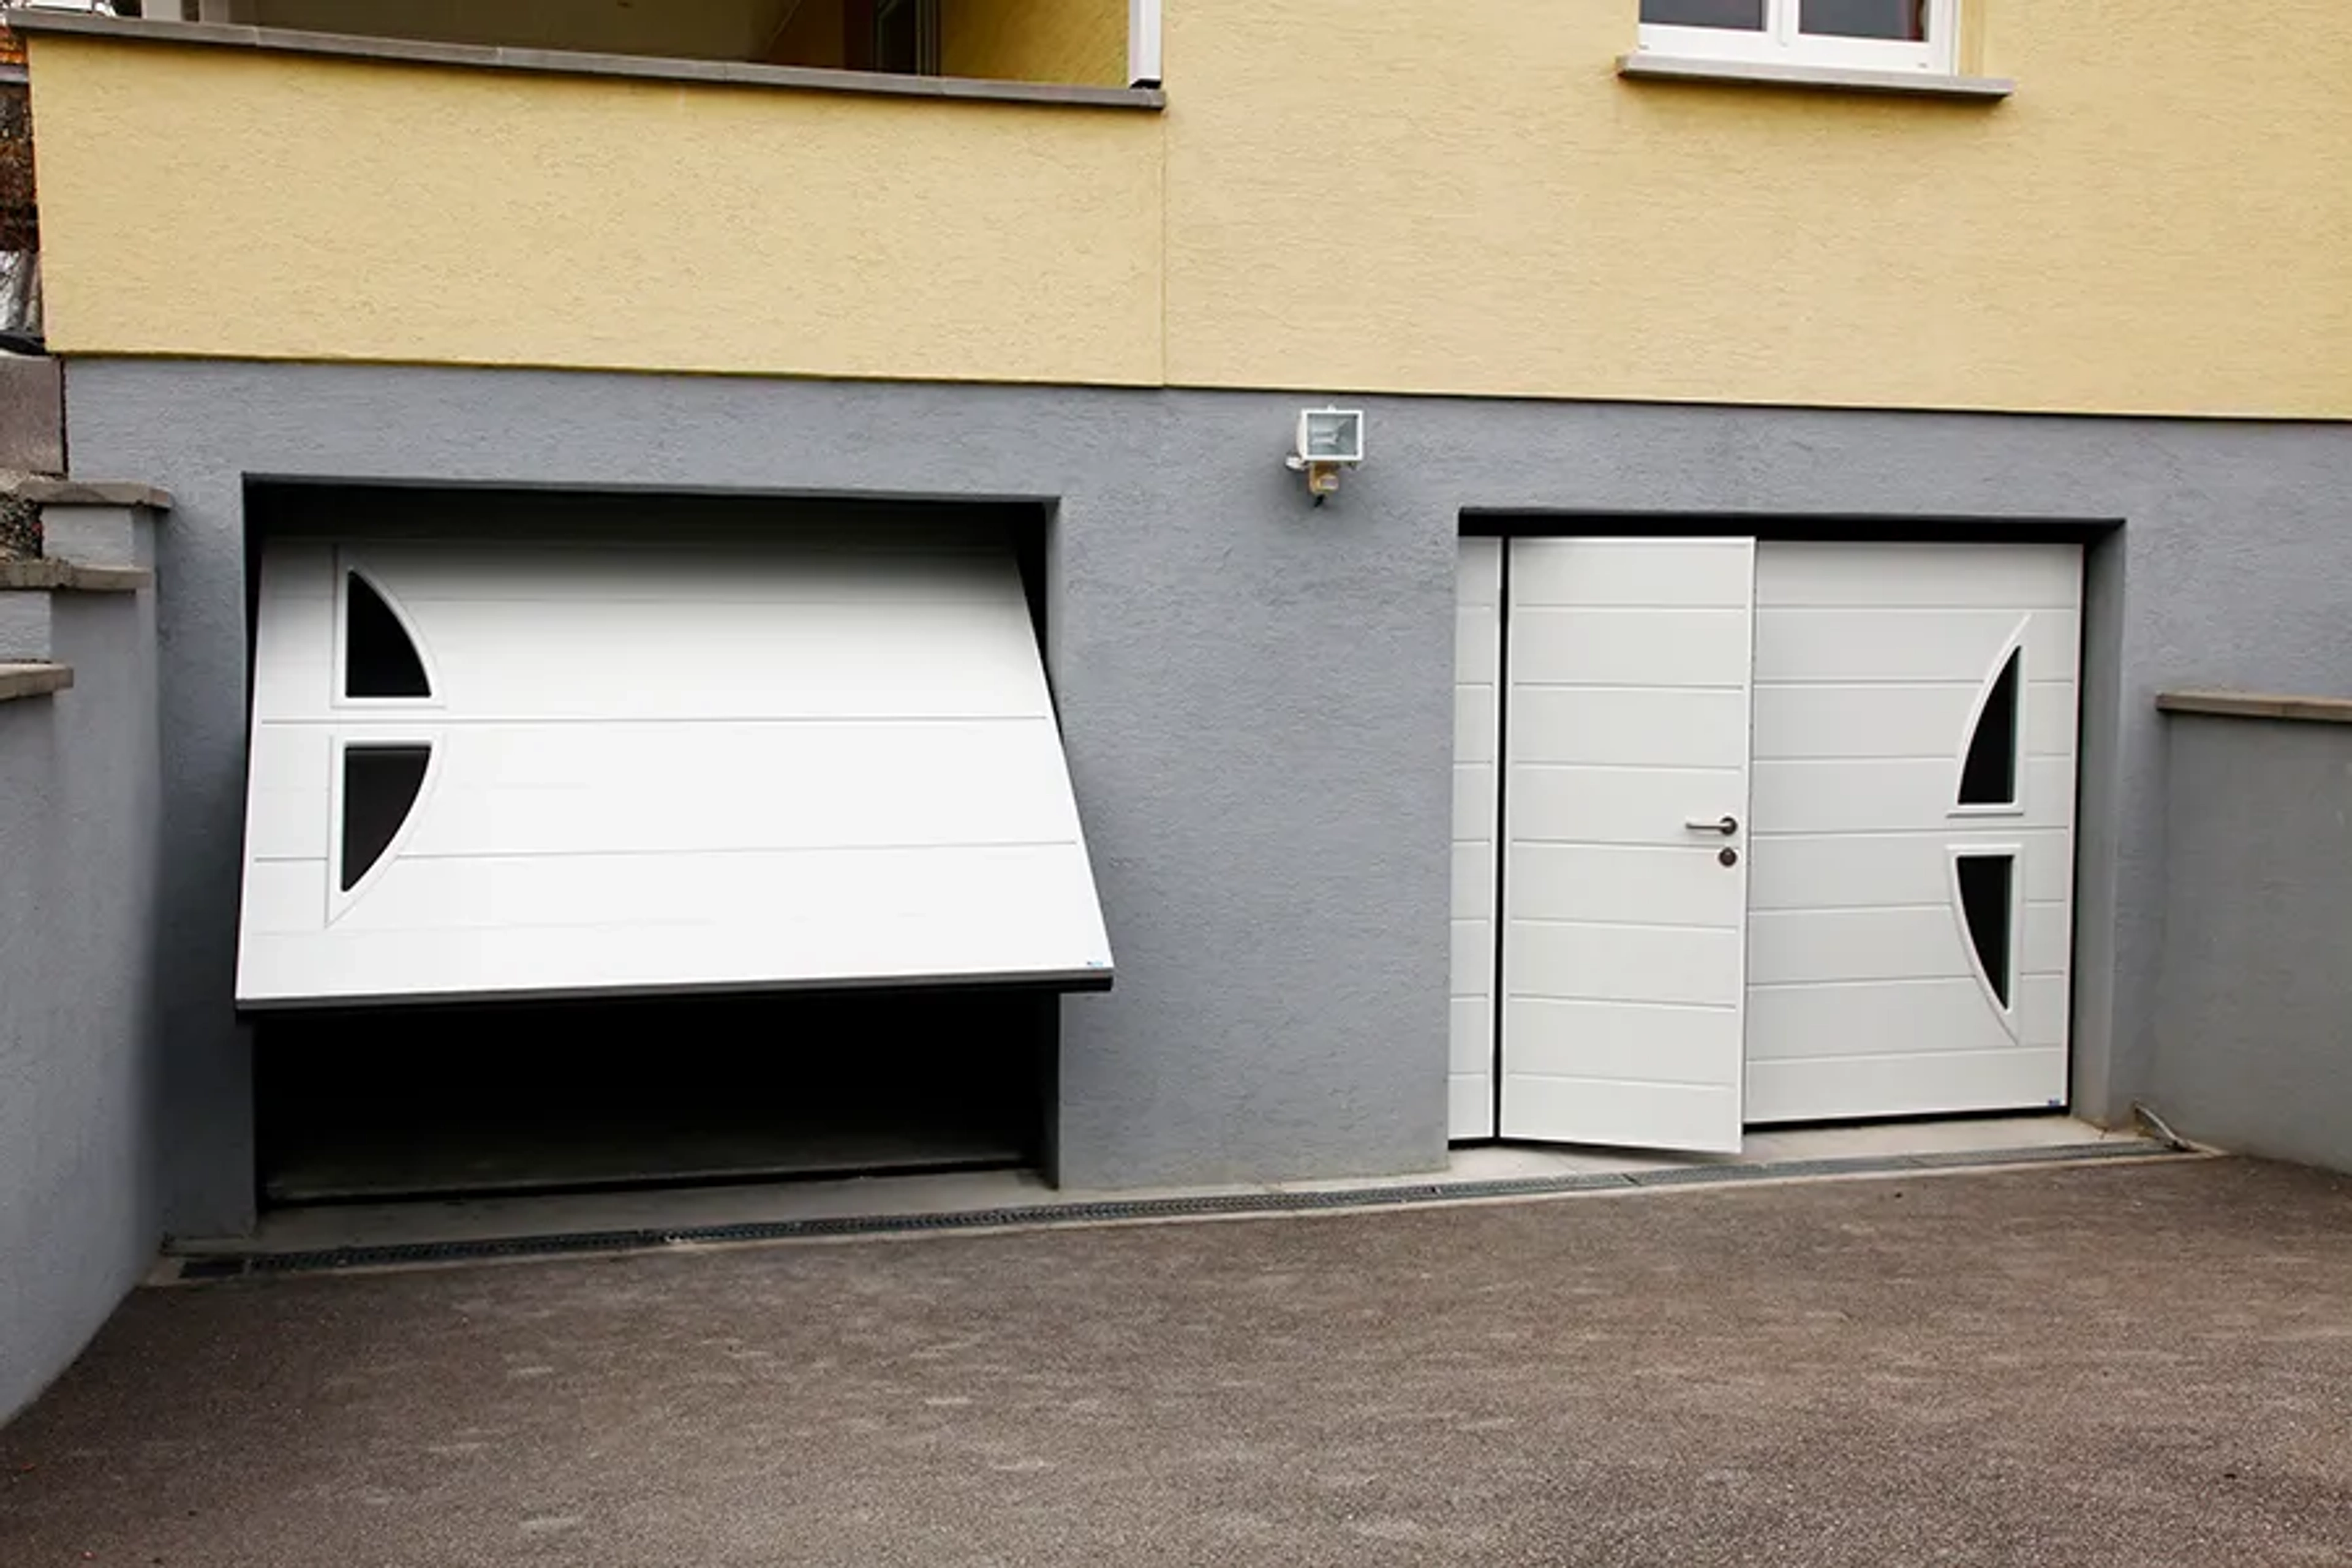 Comment bloquer une porte de garage basculante ?